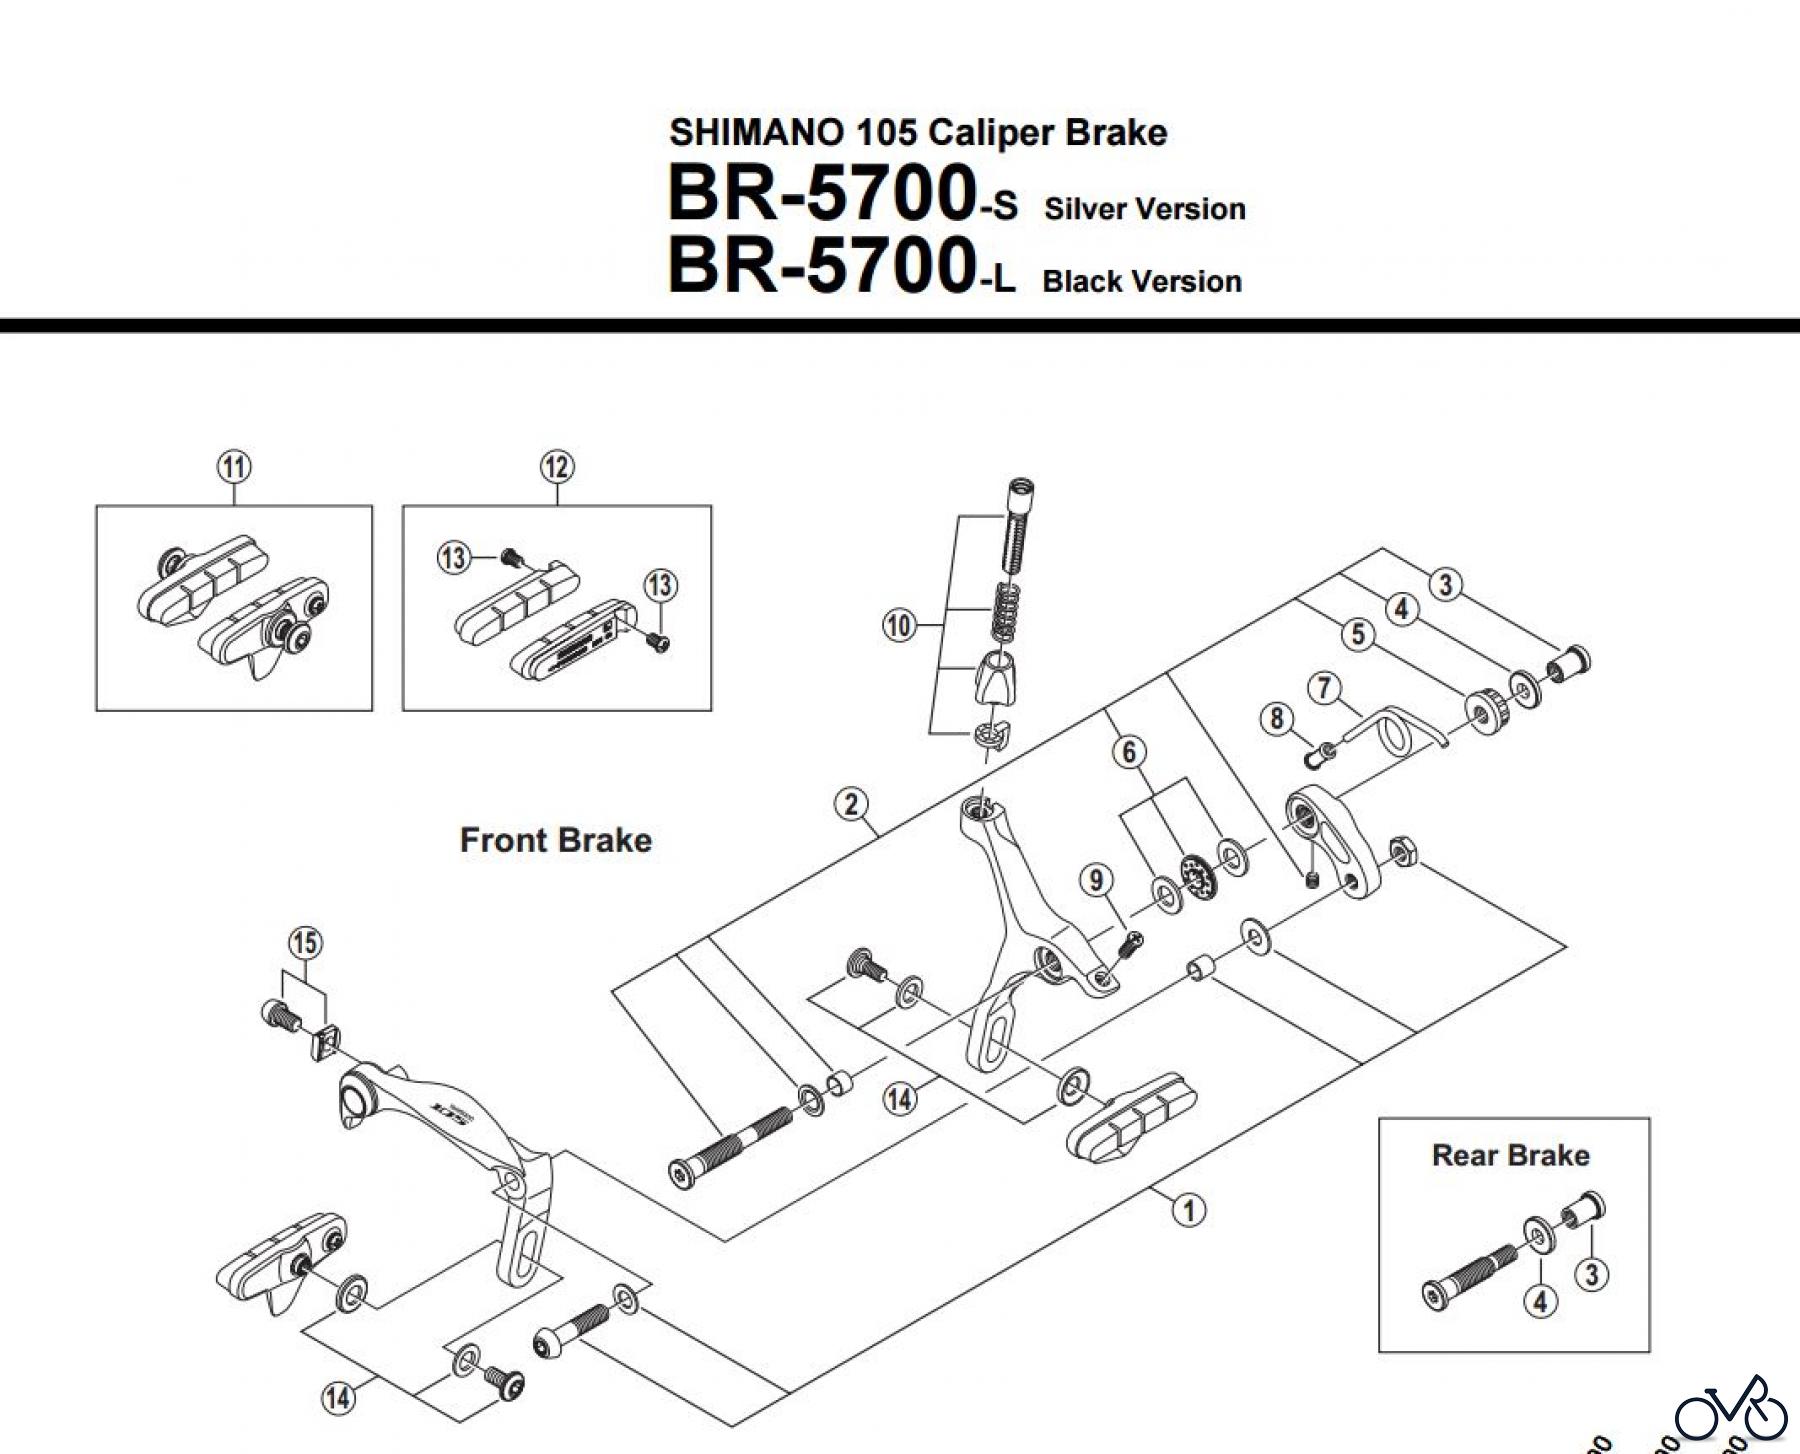  Shimano BR Brake - Bremse BR-5700 -3015A  SHIMANO 105 Caliper Brake